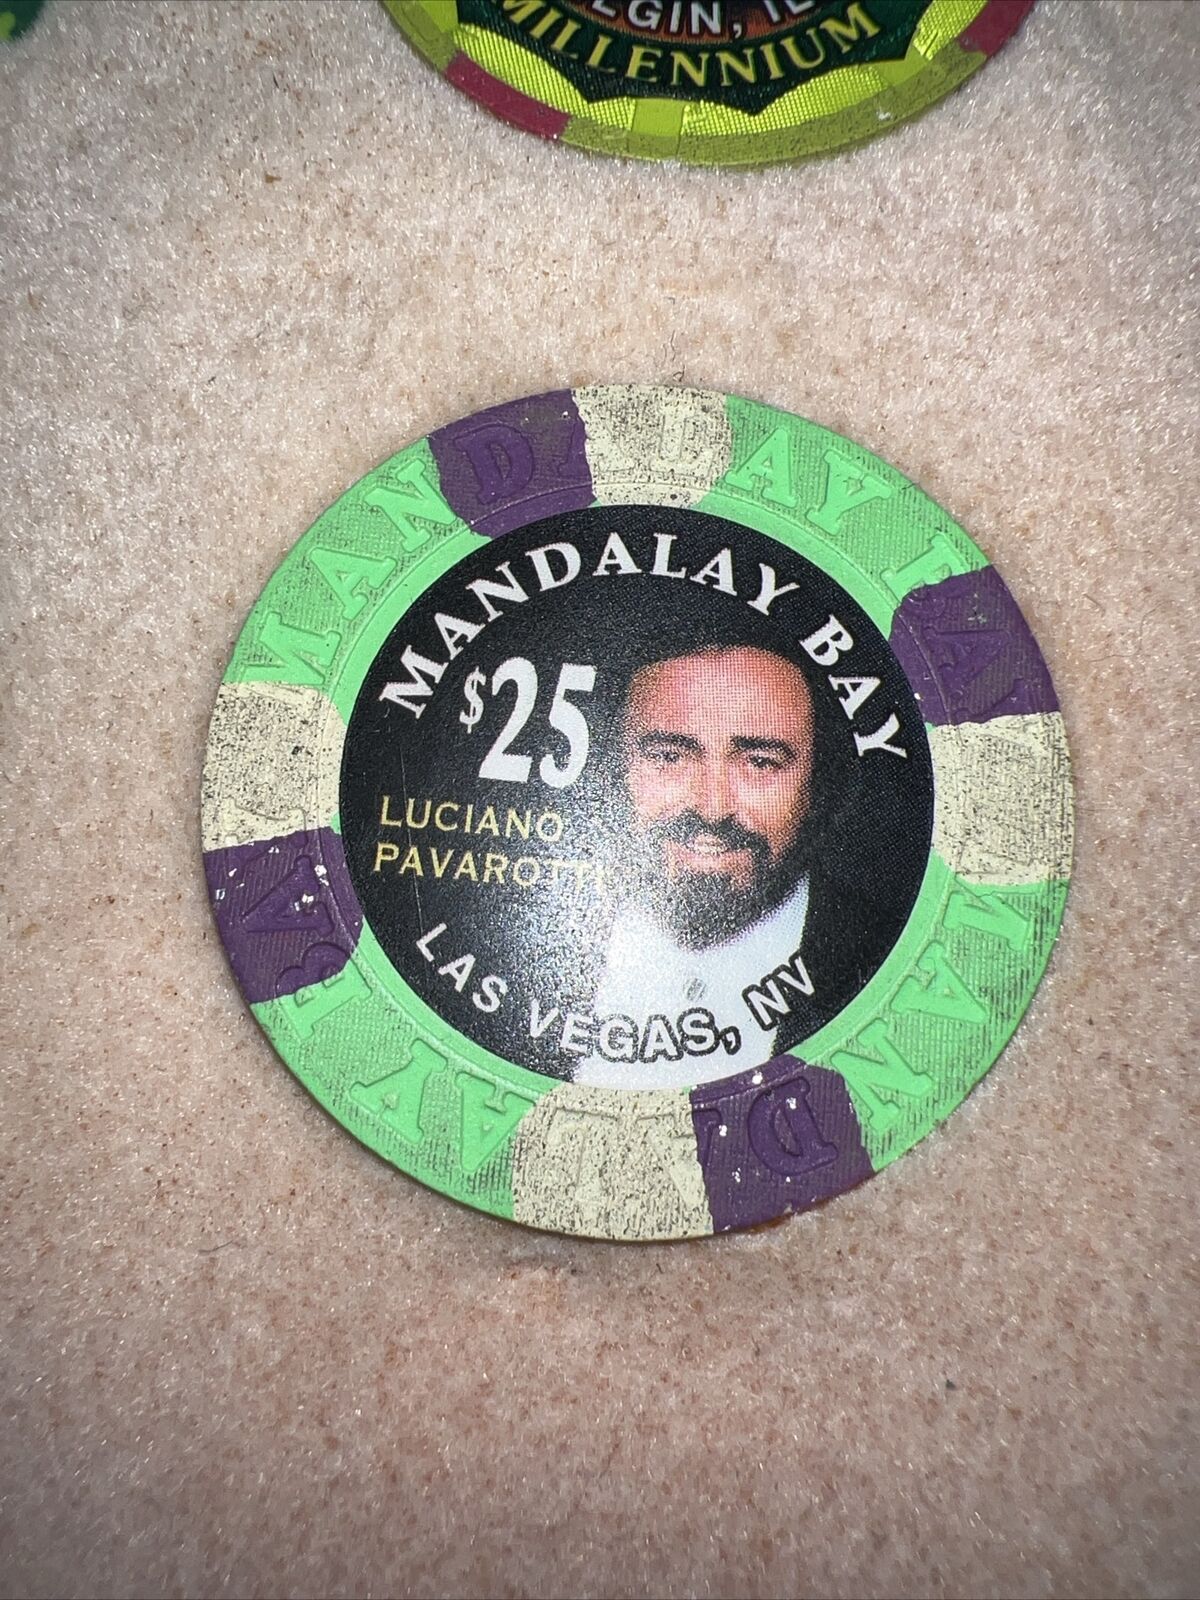 Mandalay Bay Casino Las Vegas Nevada $25 Luciano Pavarotti Chip 1999